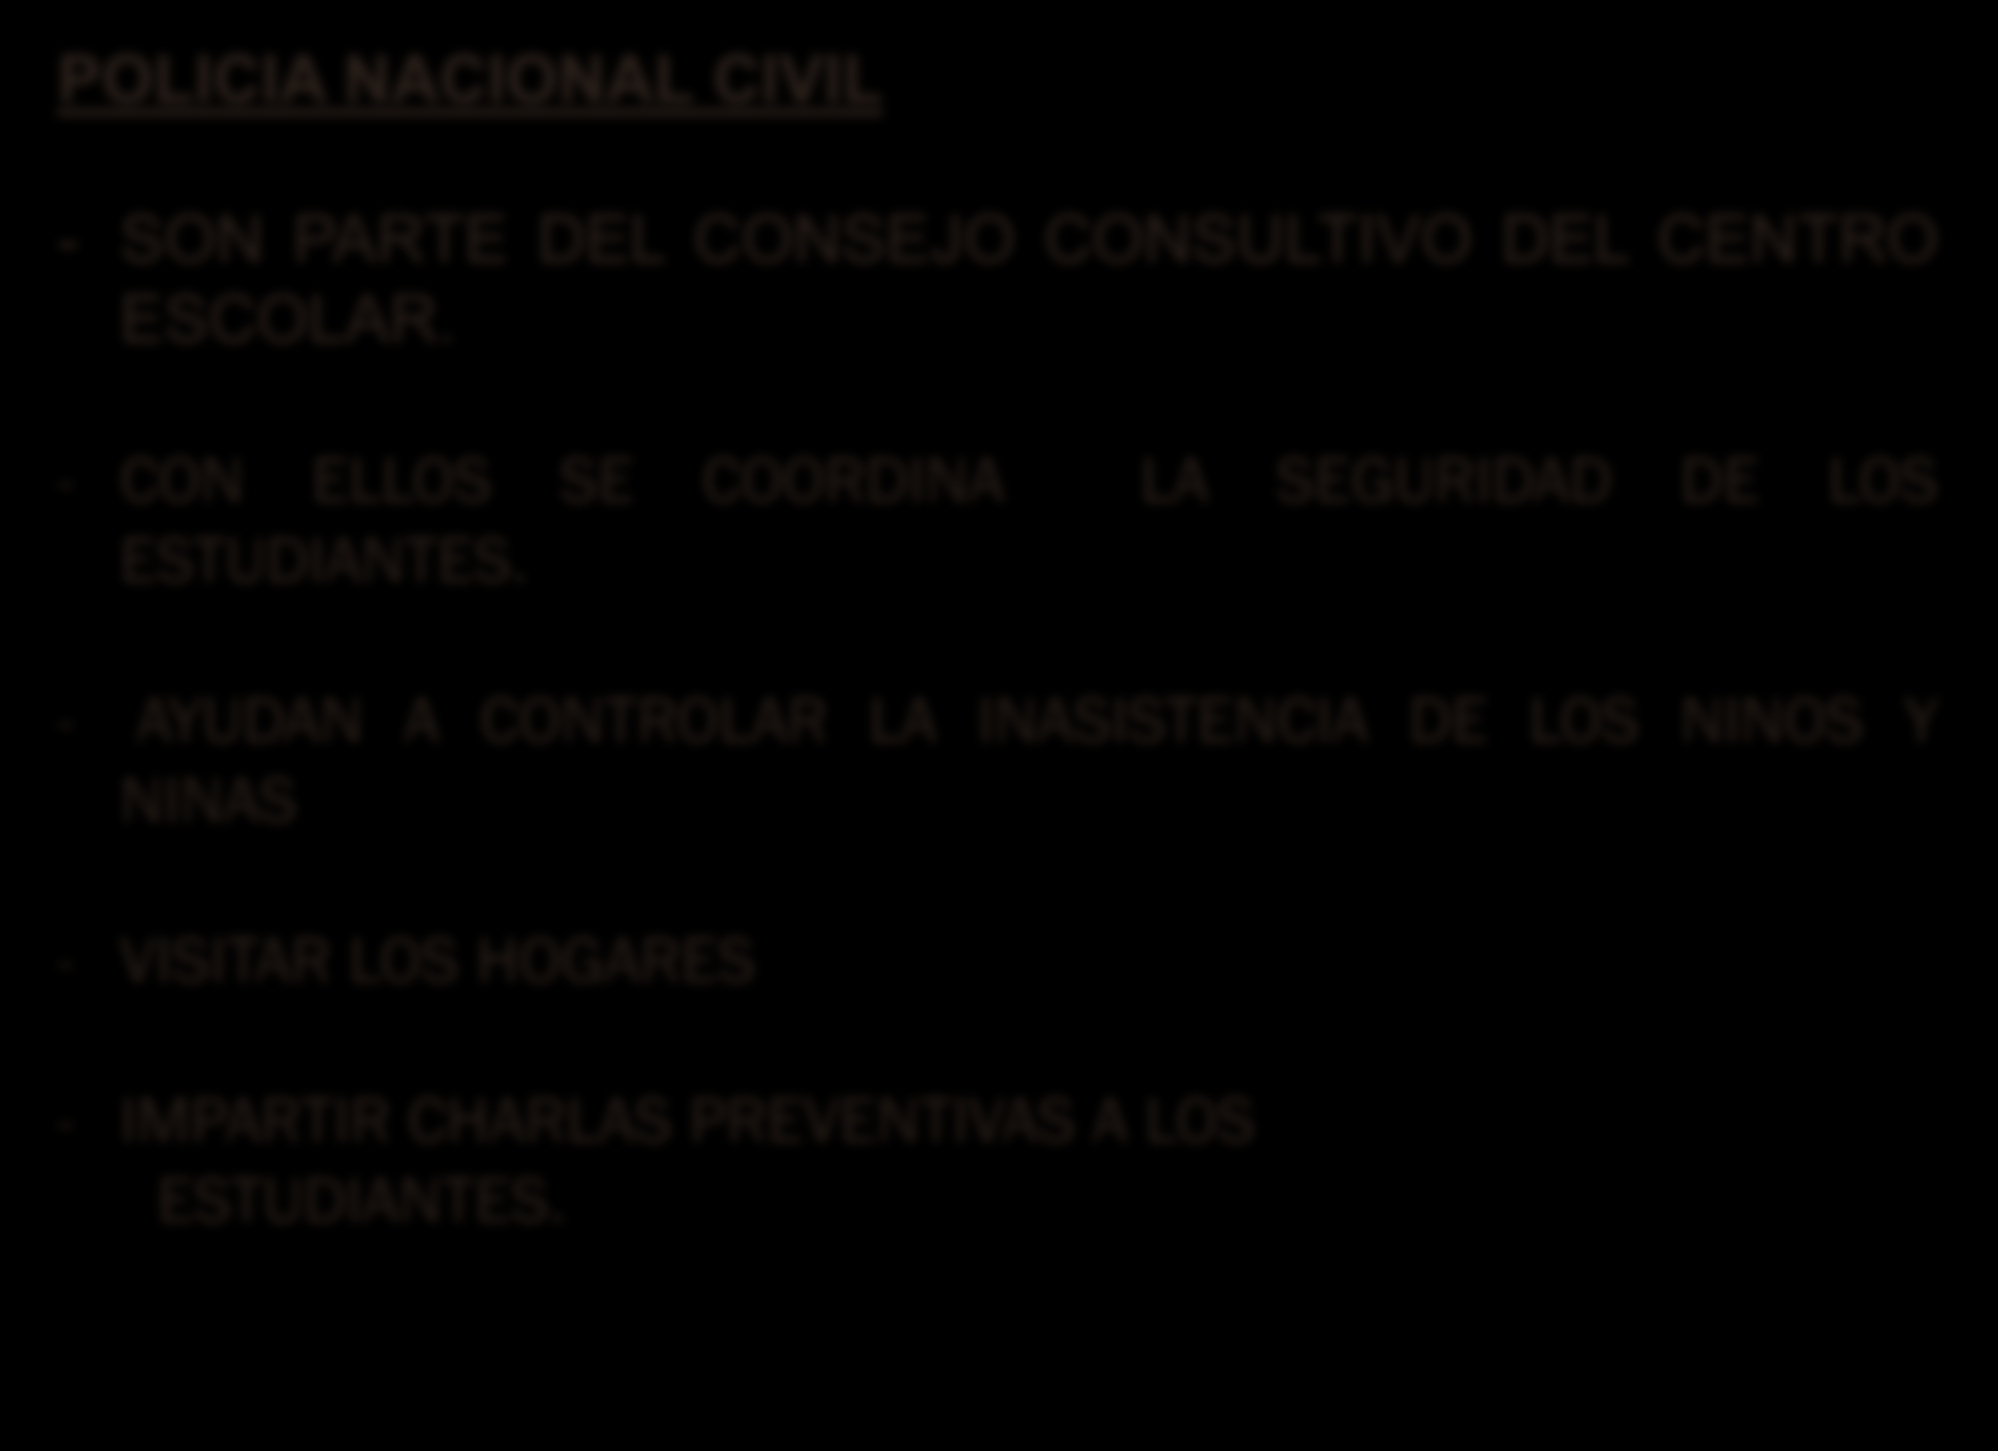 POLICIA NACIONAL CIVIL - SON PARTE DEL CONSEJO CONSULTIVO DEL CENTRO ESCOLAR.